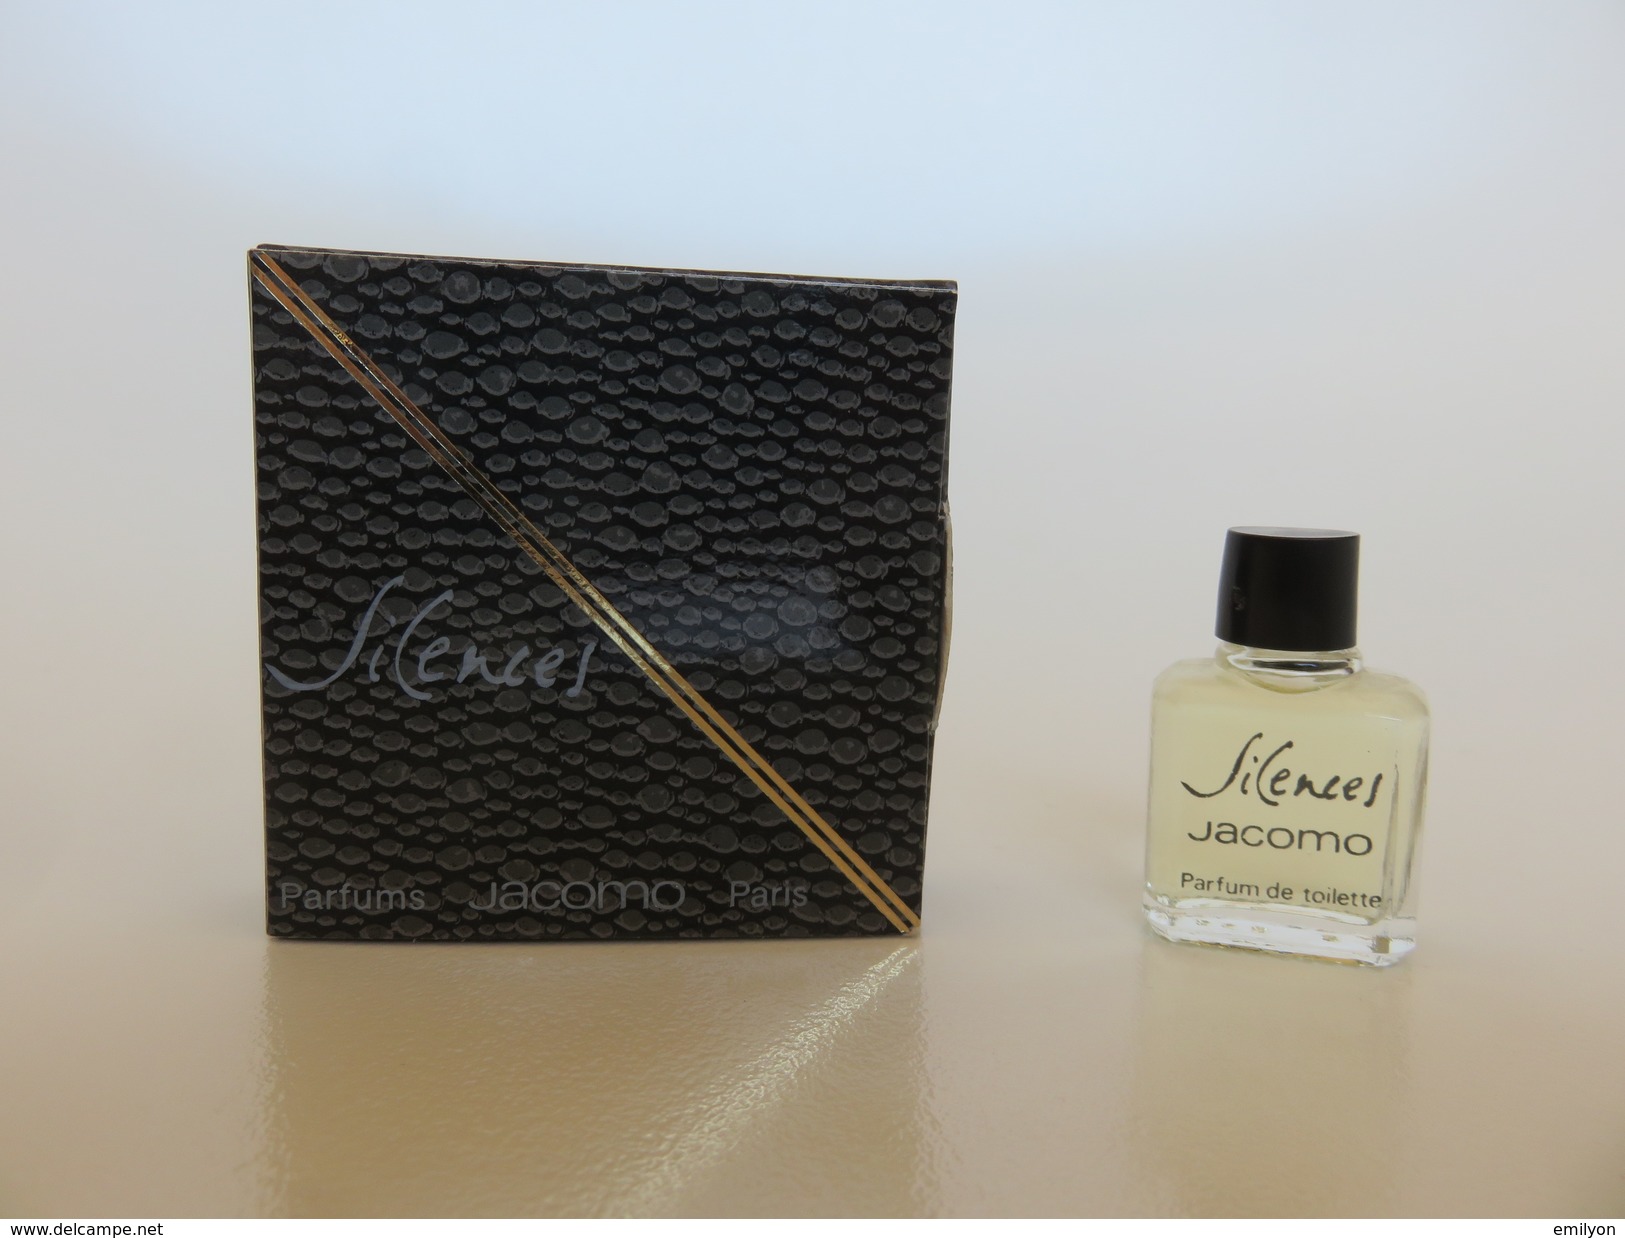 Silences - Jacomo - Parfum De Toilette - 2.5 ML - Miniatures Men's Fragrances (in Box)